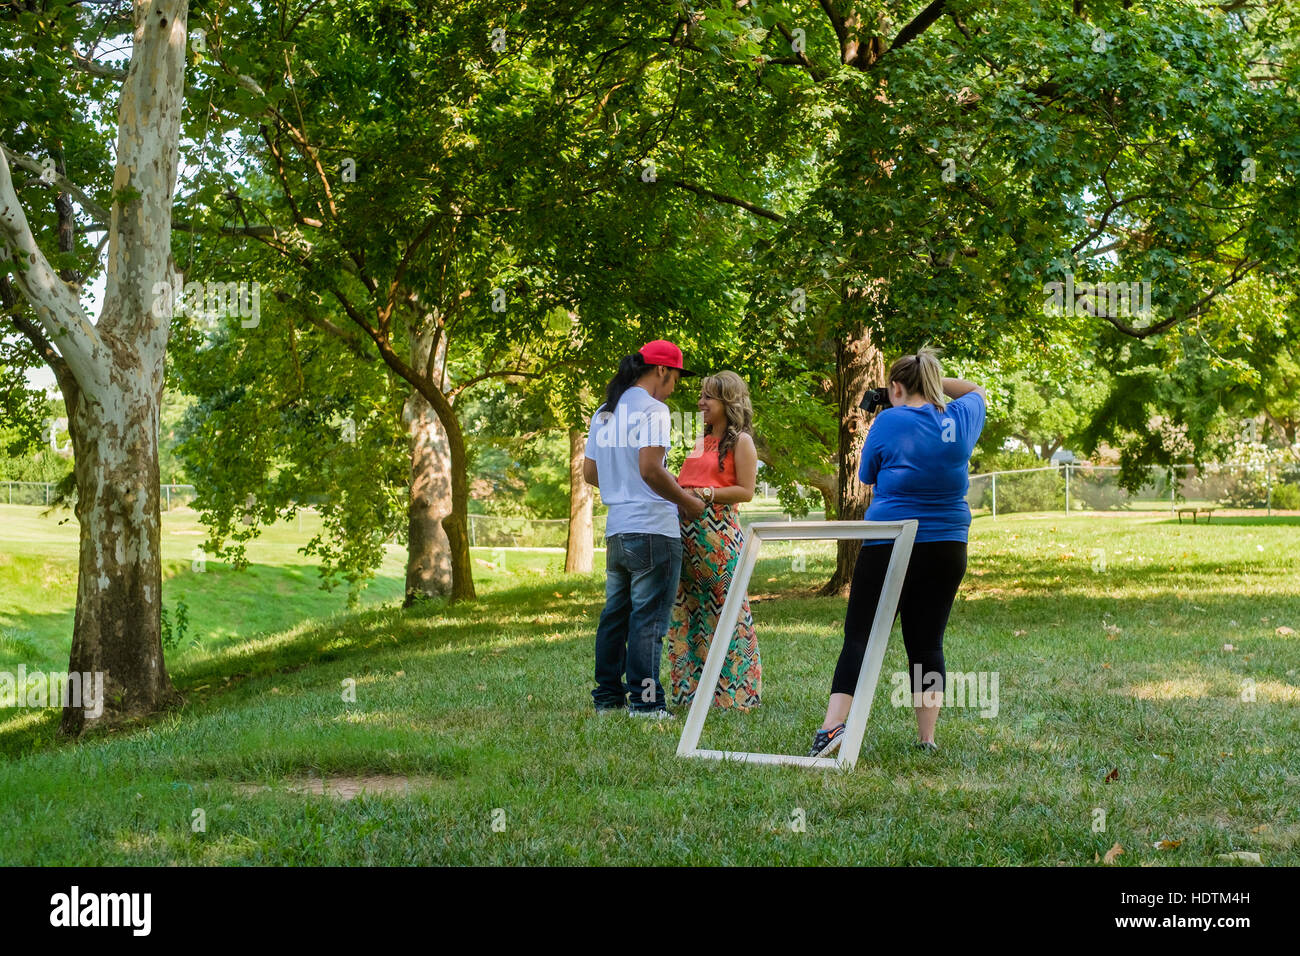 Un etnica giovane pongono mentre una femmina di fotografo prende le loro foto all'aperto in un parco. Oklahoma City, Oklahoma, Stati Uniti d'America. Foto Stock